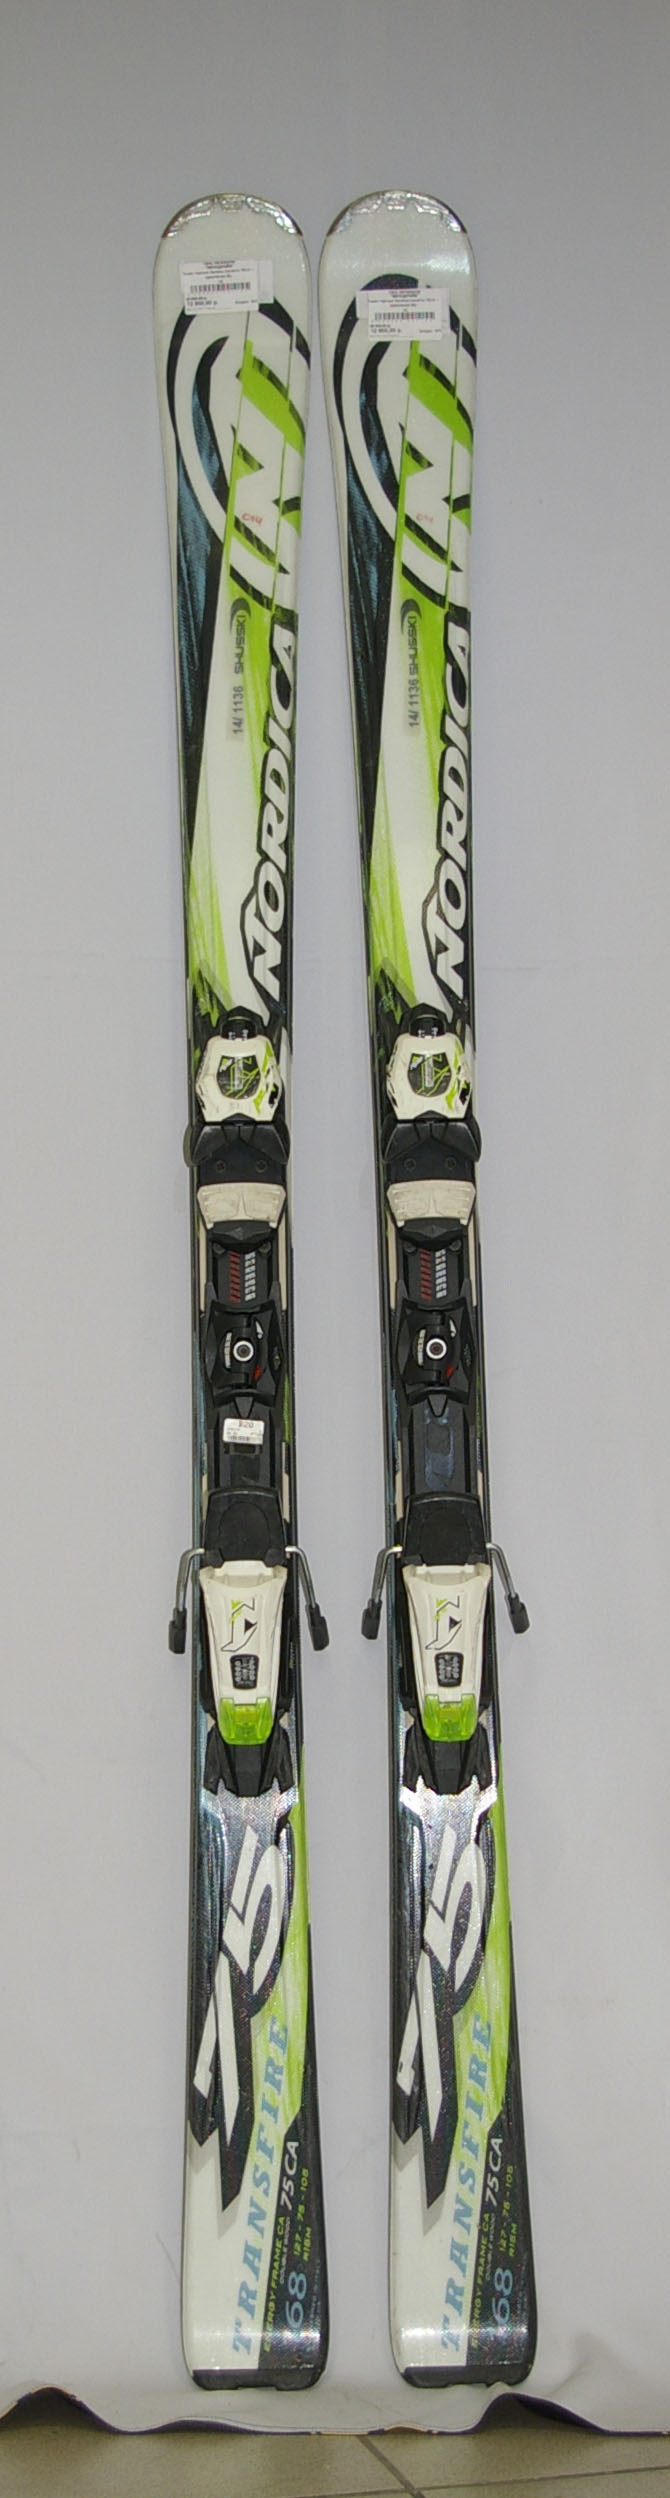 Купить Лыжи горные Nordica transfire 75CA + крепление б/у